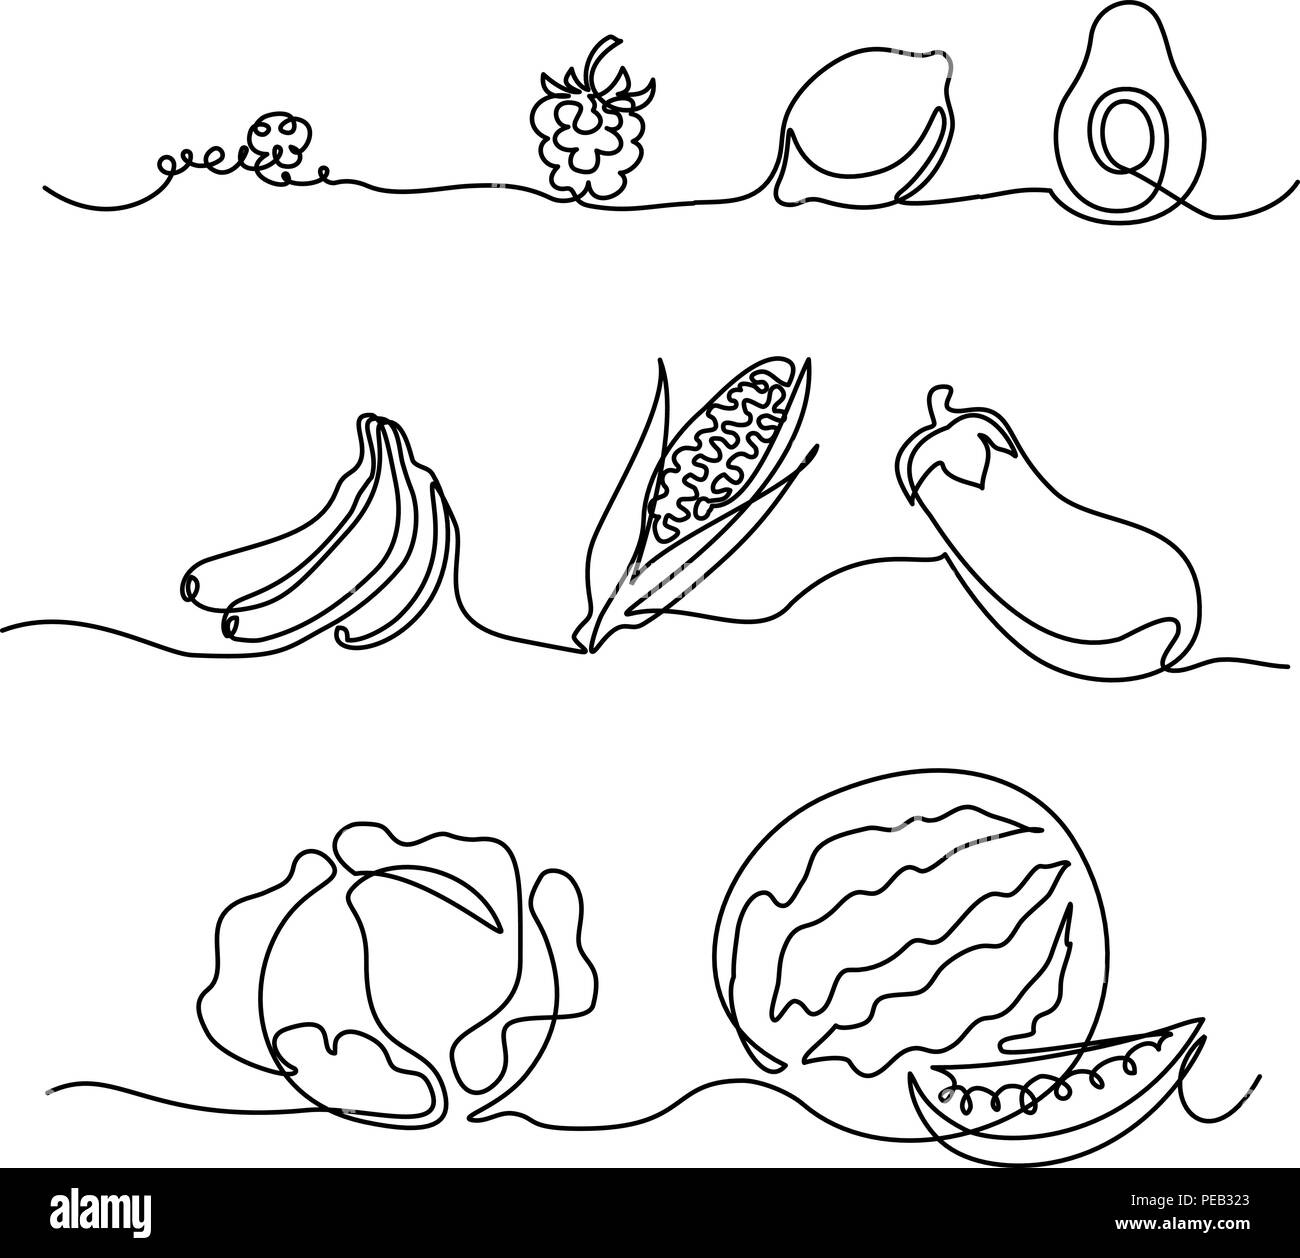 Kontinuierliche eine Linie zeichnen. Gemüse differebt Größe. Vector Illustration Stock Vektor